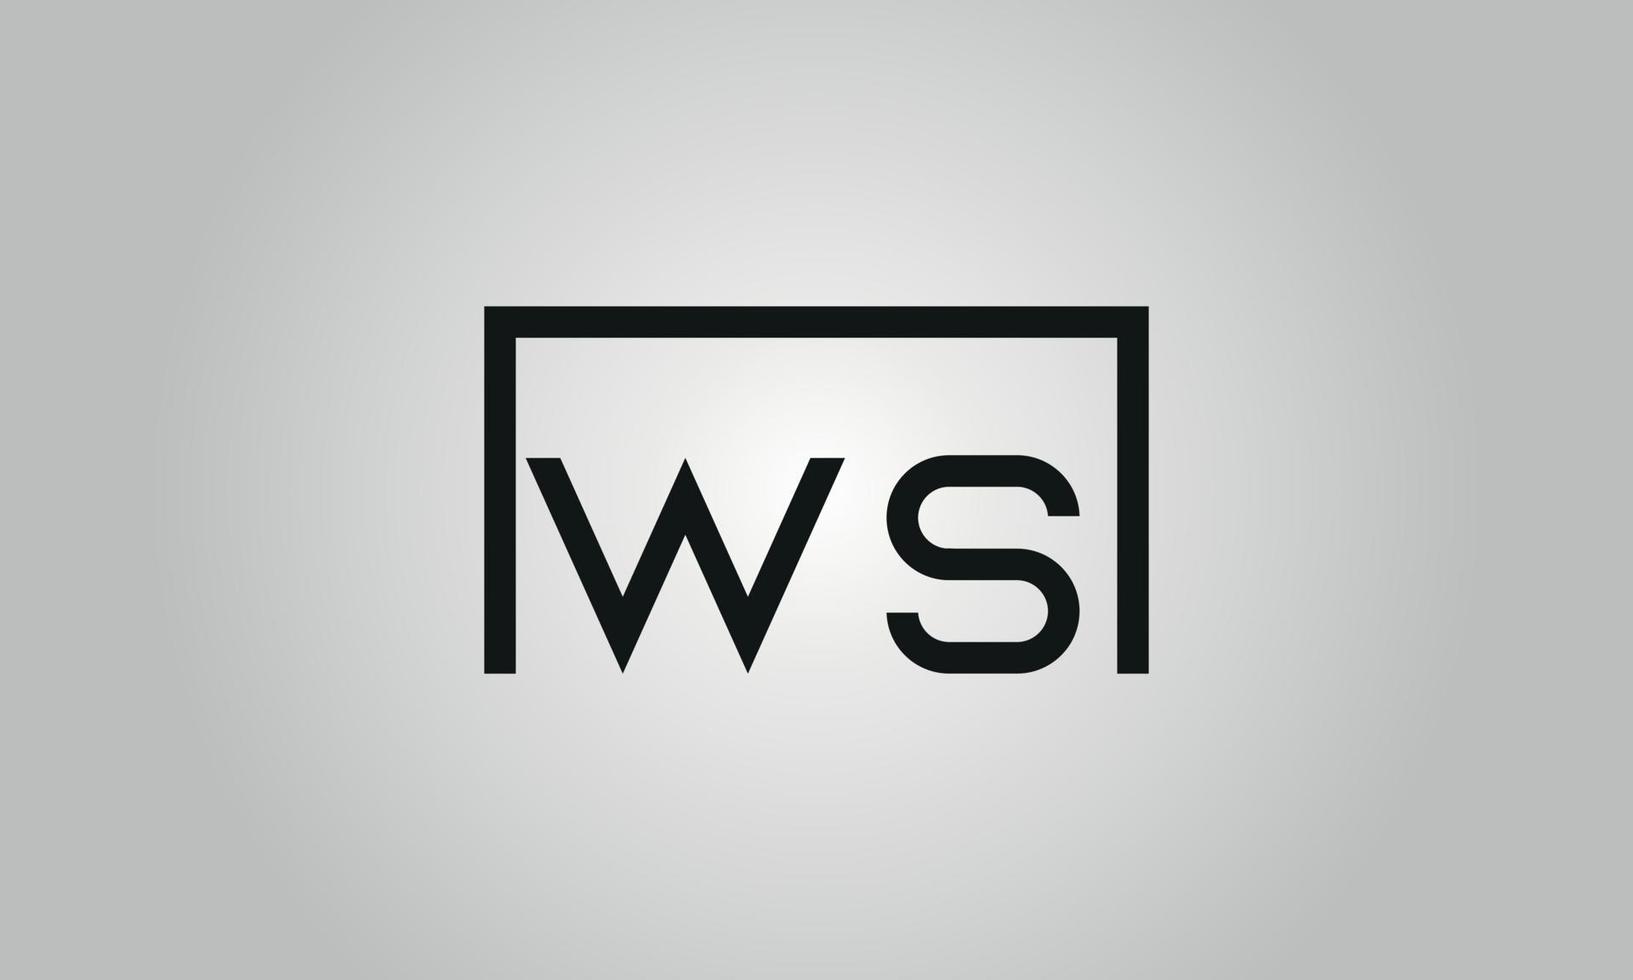 Buchstabe ws Logo-Design. ws-Logo mit quadratischer Form in schwarzen Farben Vektor kostenlose Vektorvorlage.